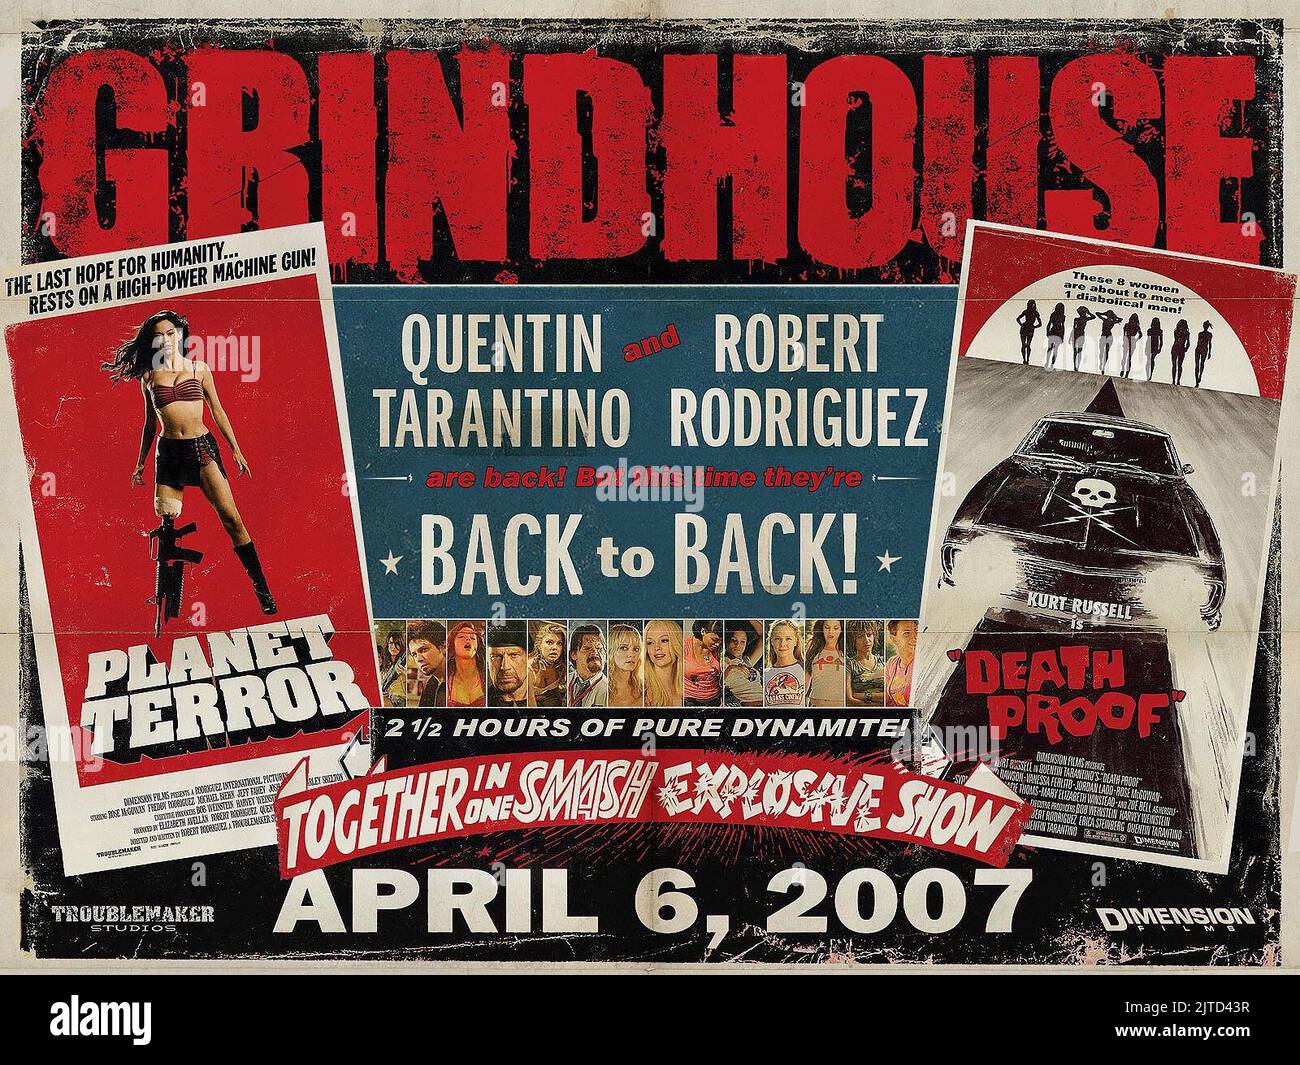 Grindhouse (2007) IMDb: 7.5